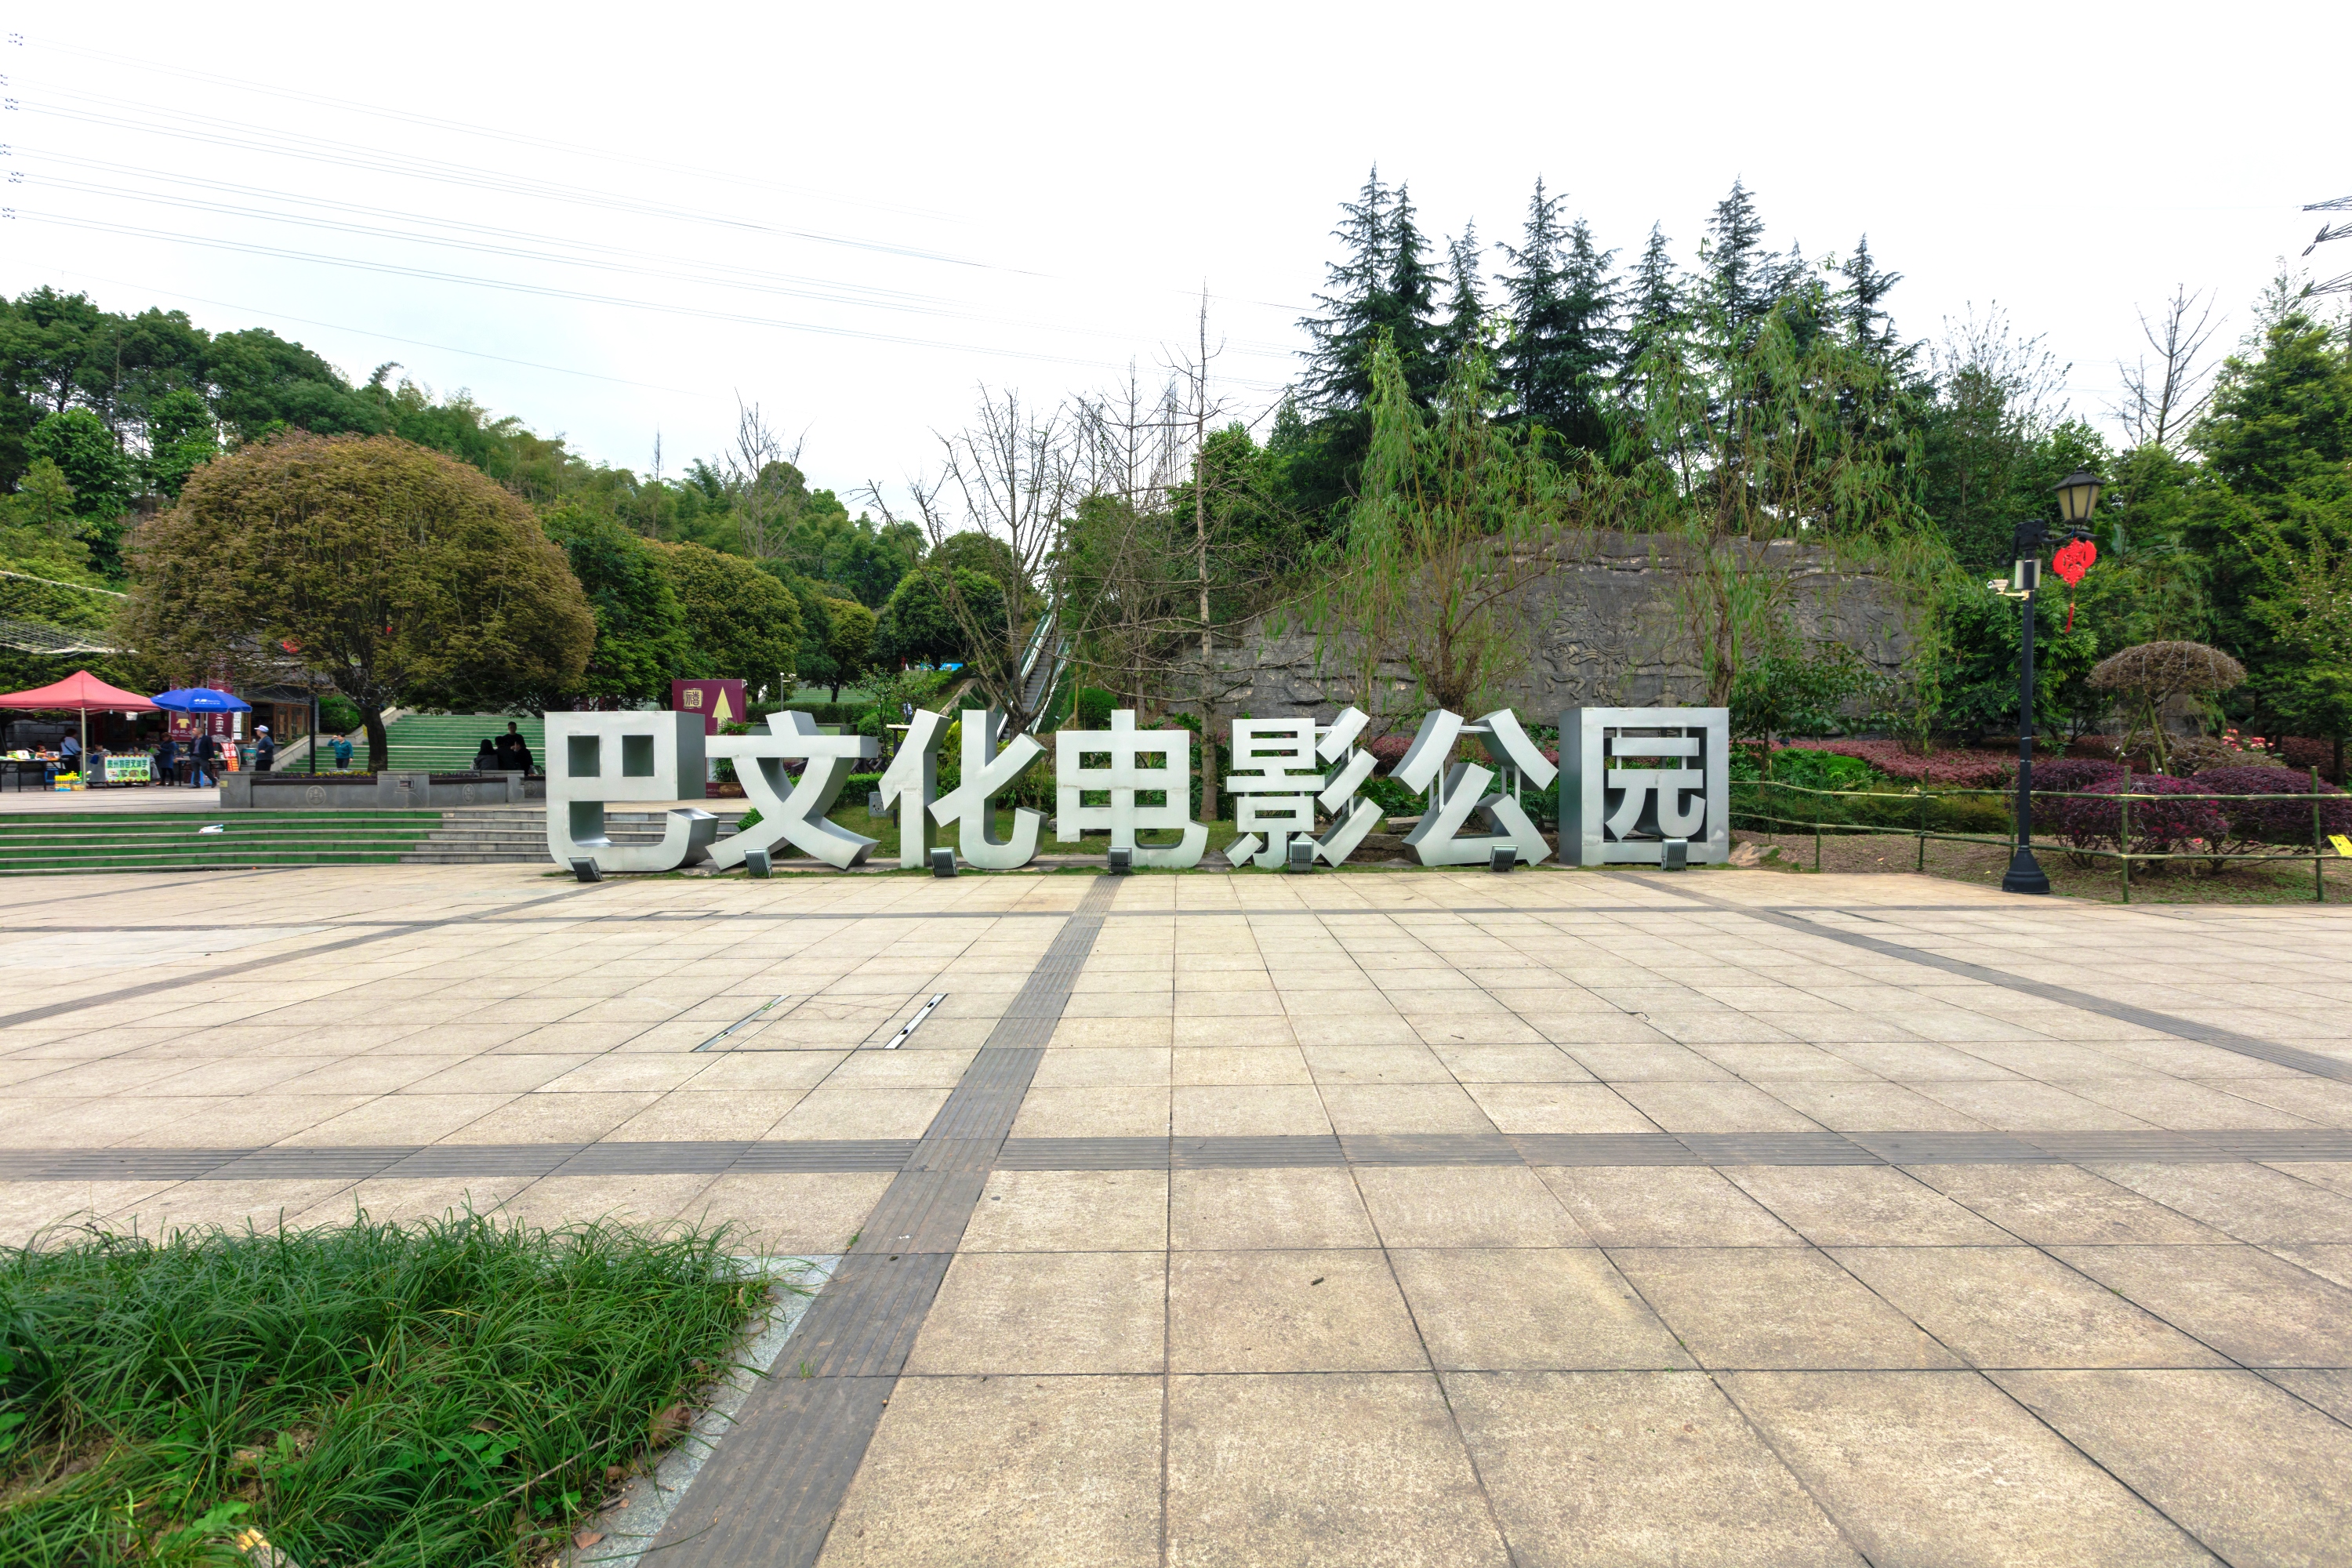 巴文化公园